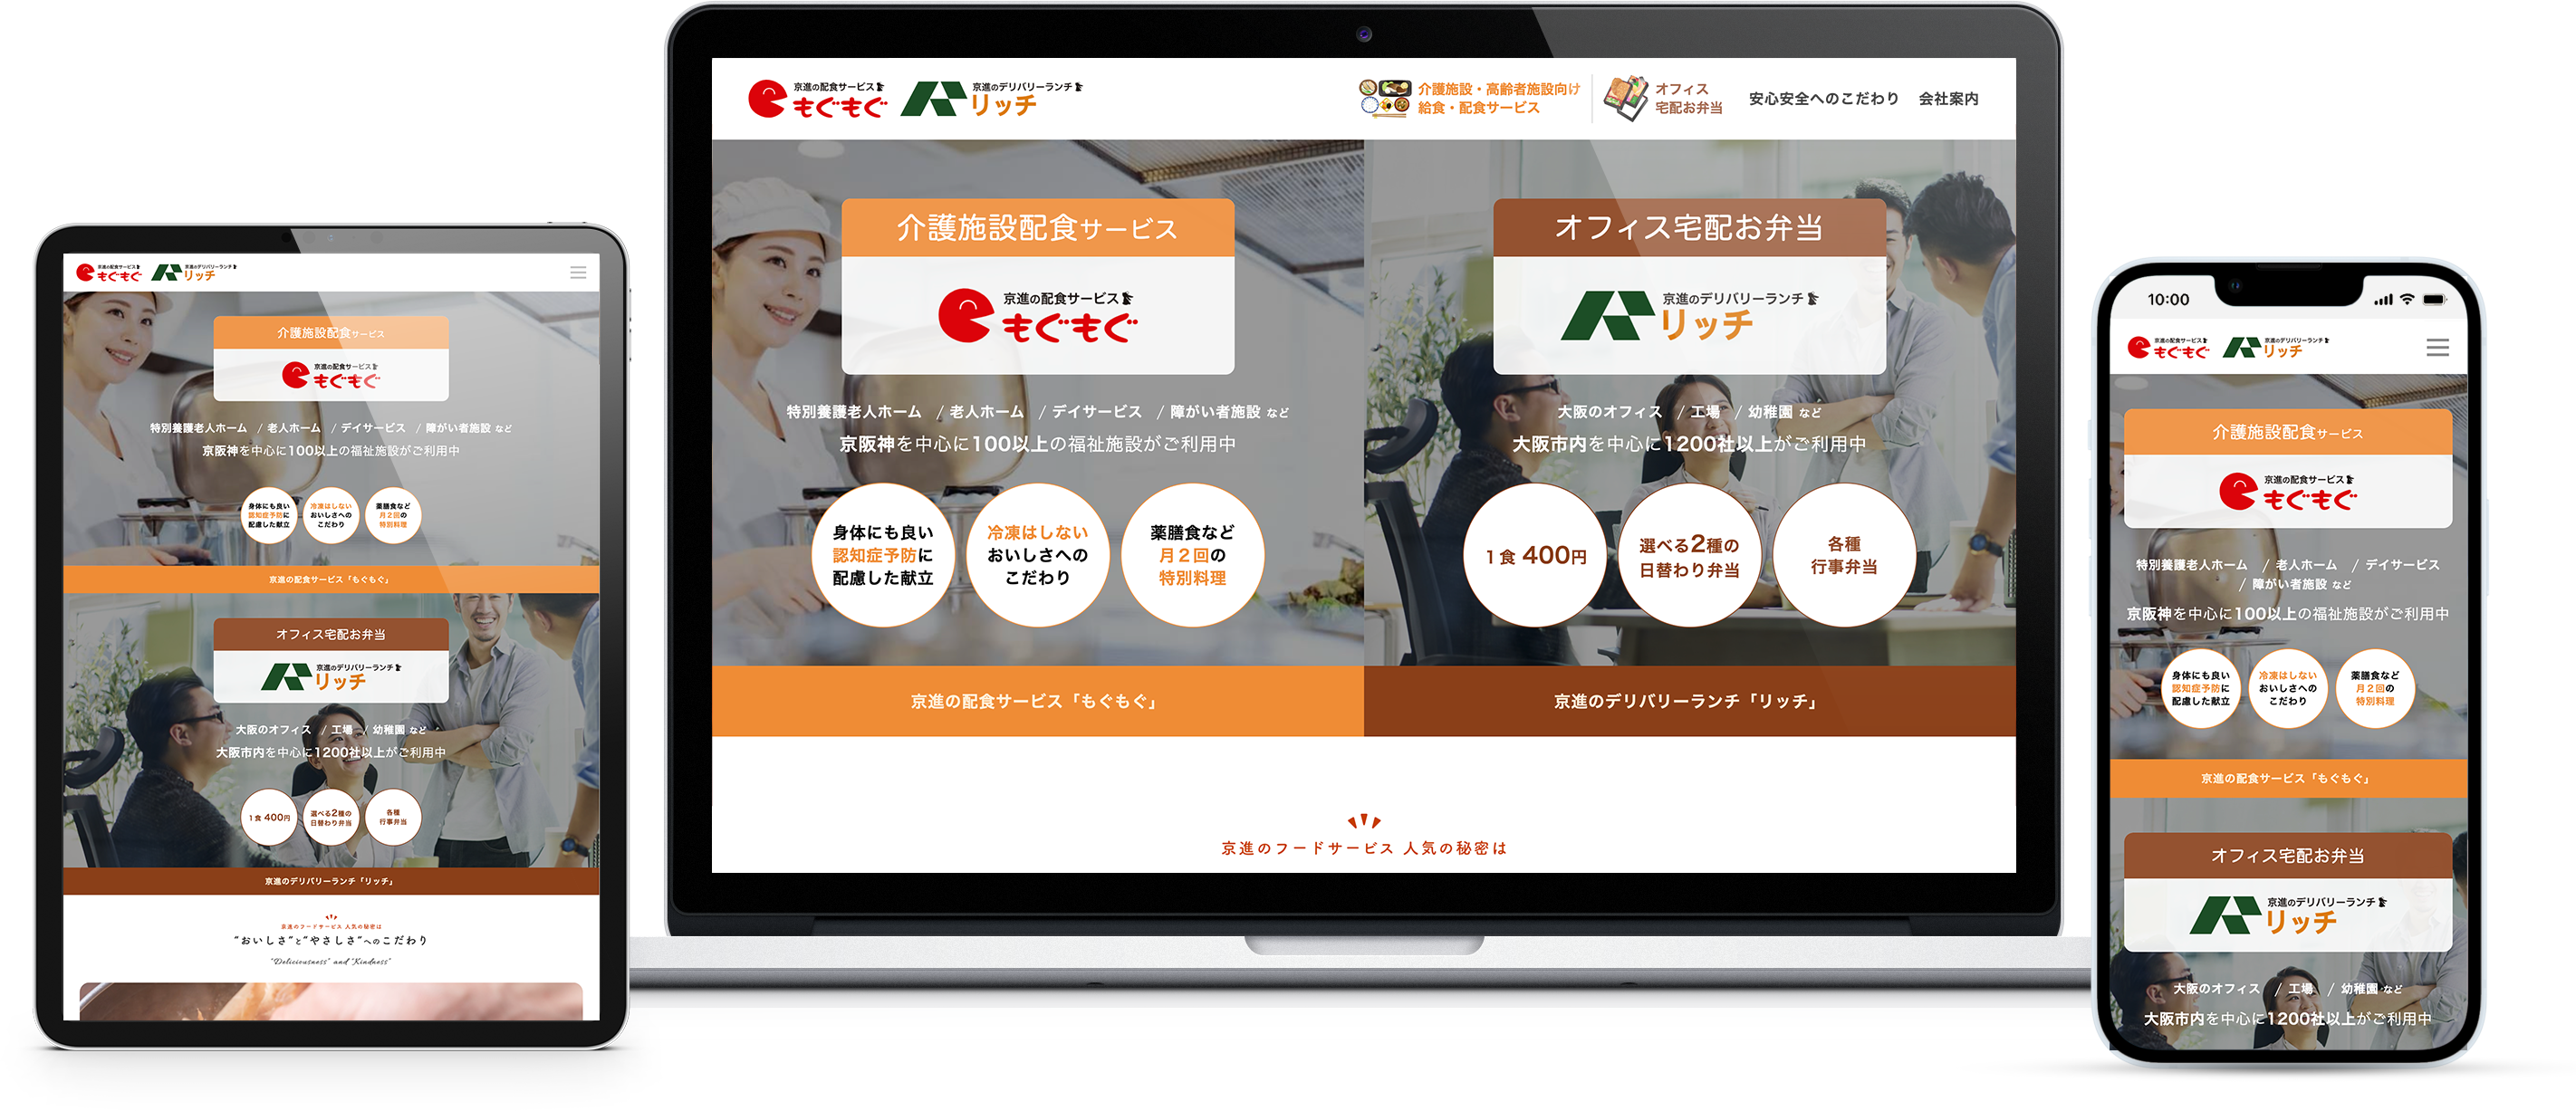 京進フードサービス「もぐもぐ」&「リッチ」のwebサイトのモックアップ